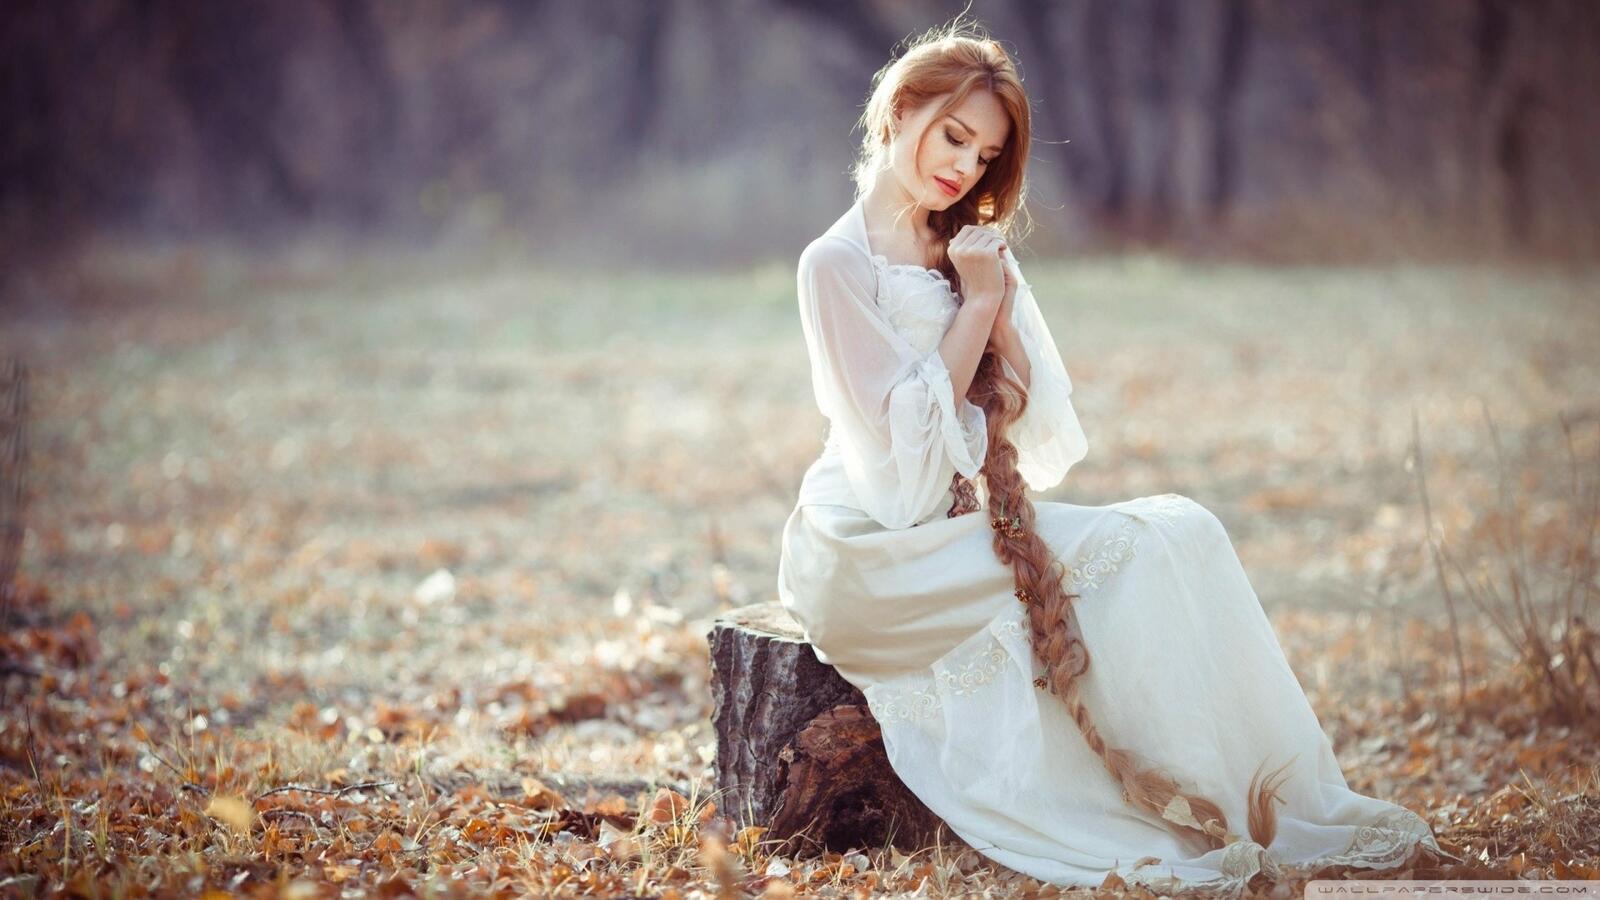 Бесплатное фото Девушка в белом платье с длинной косой